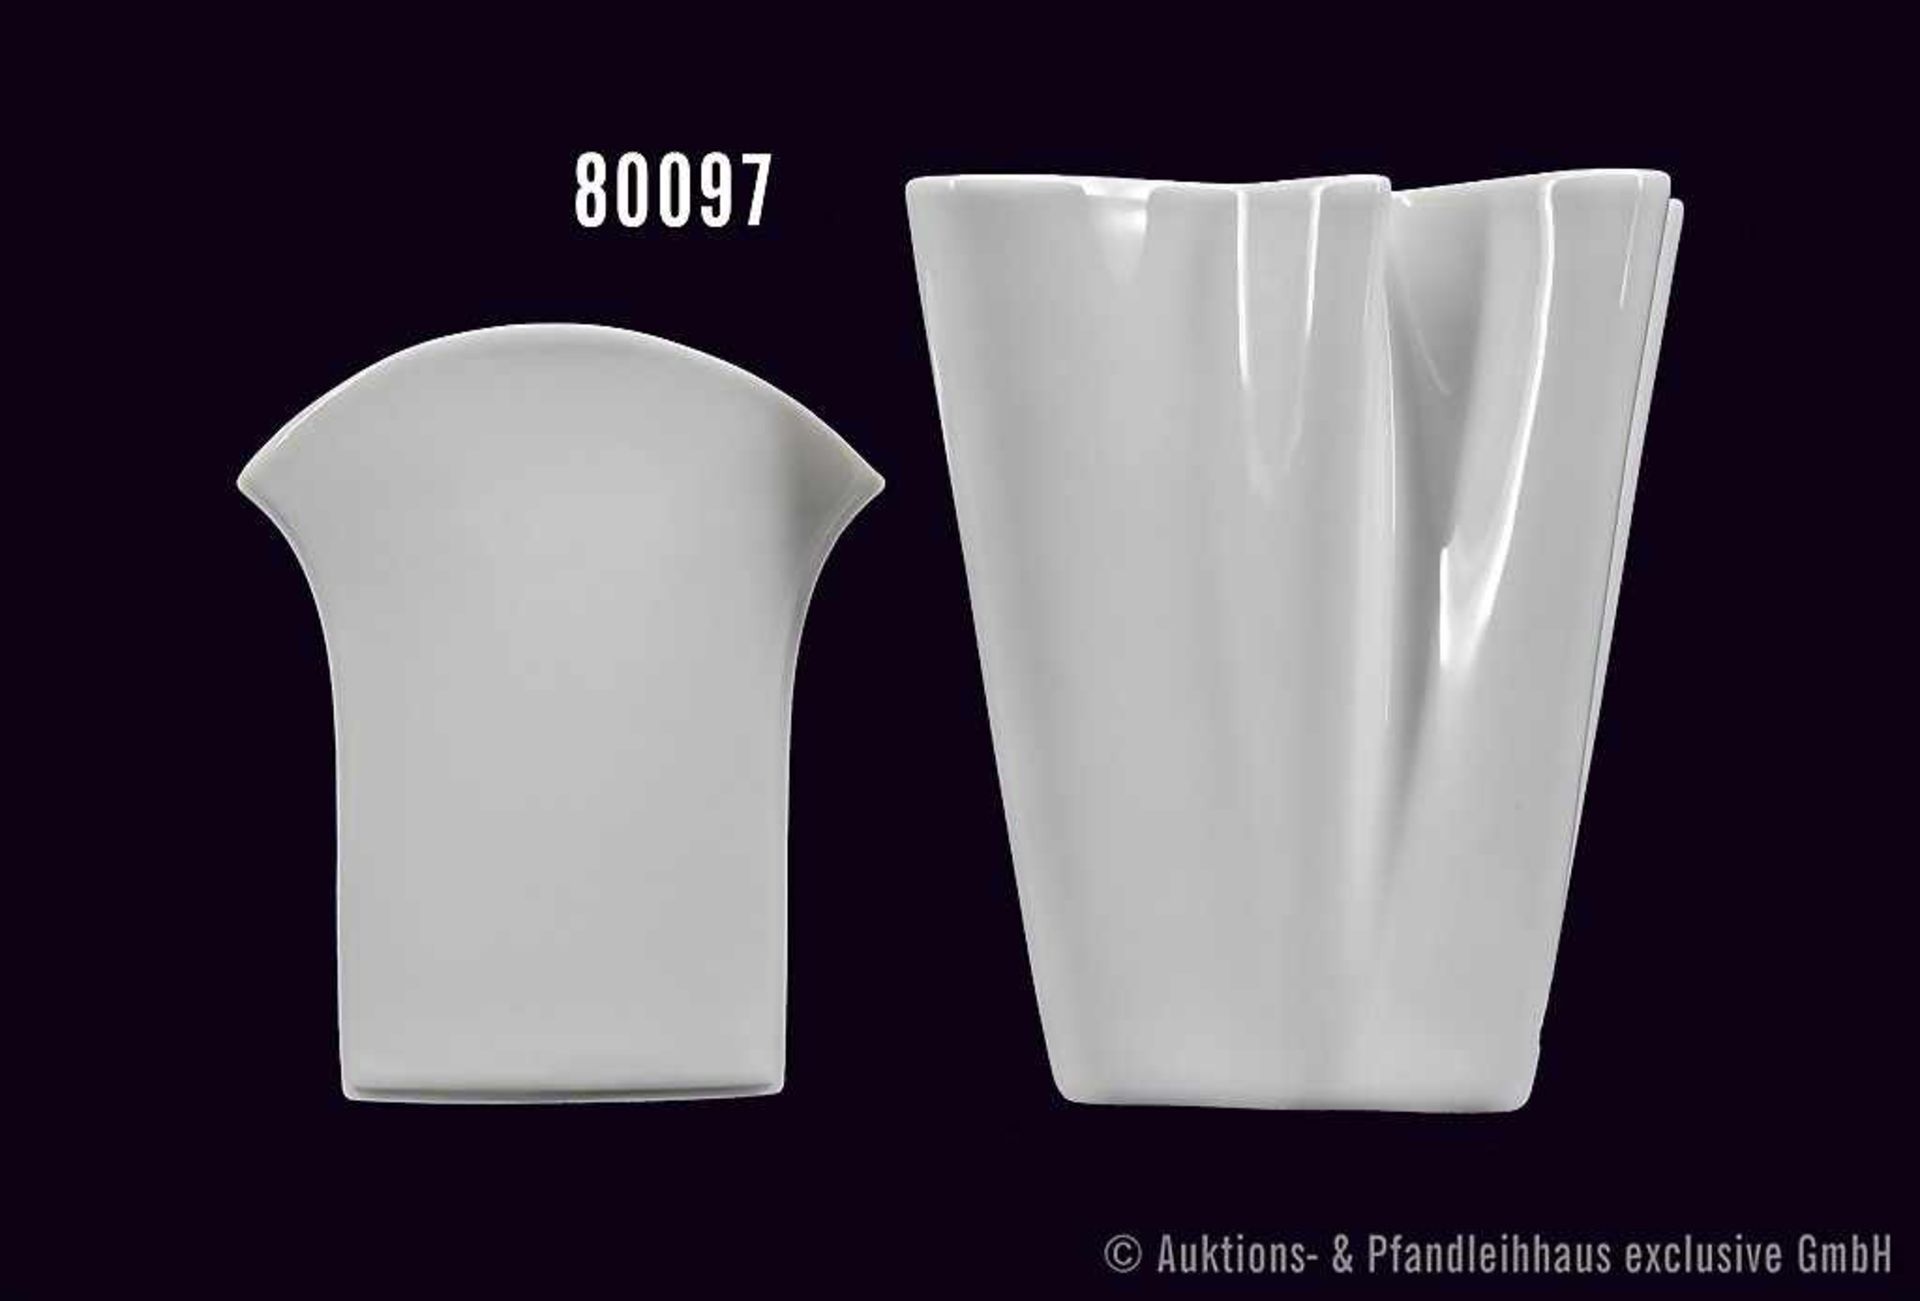 Konv. Rosenthal Porzellan, 2 Vasen, studio-linie, Serie Flux, Dekor weiß, Nr. 14259/14 und 4149/